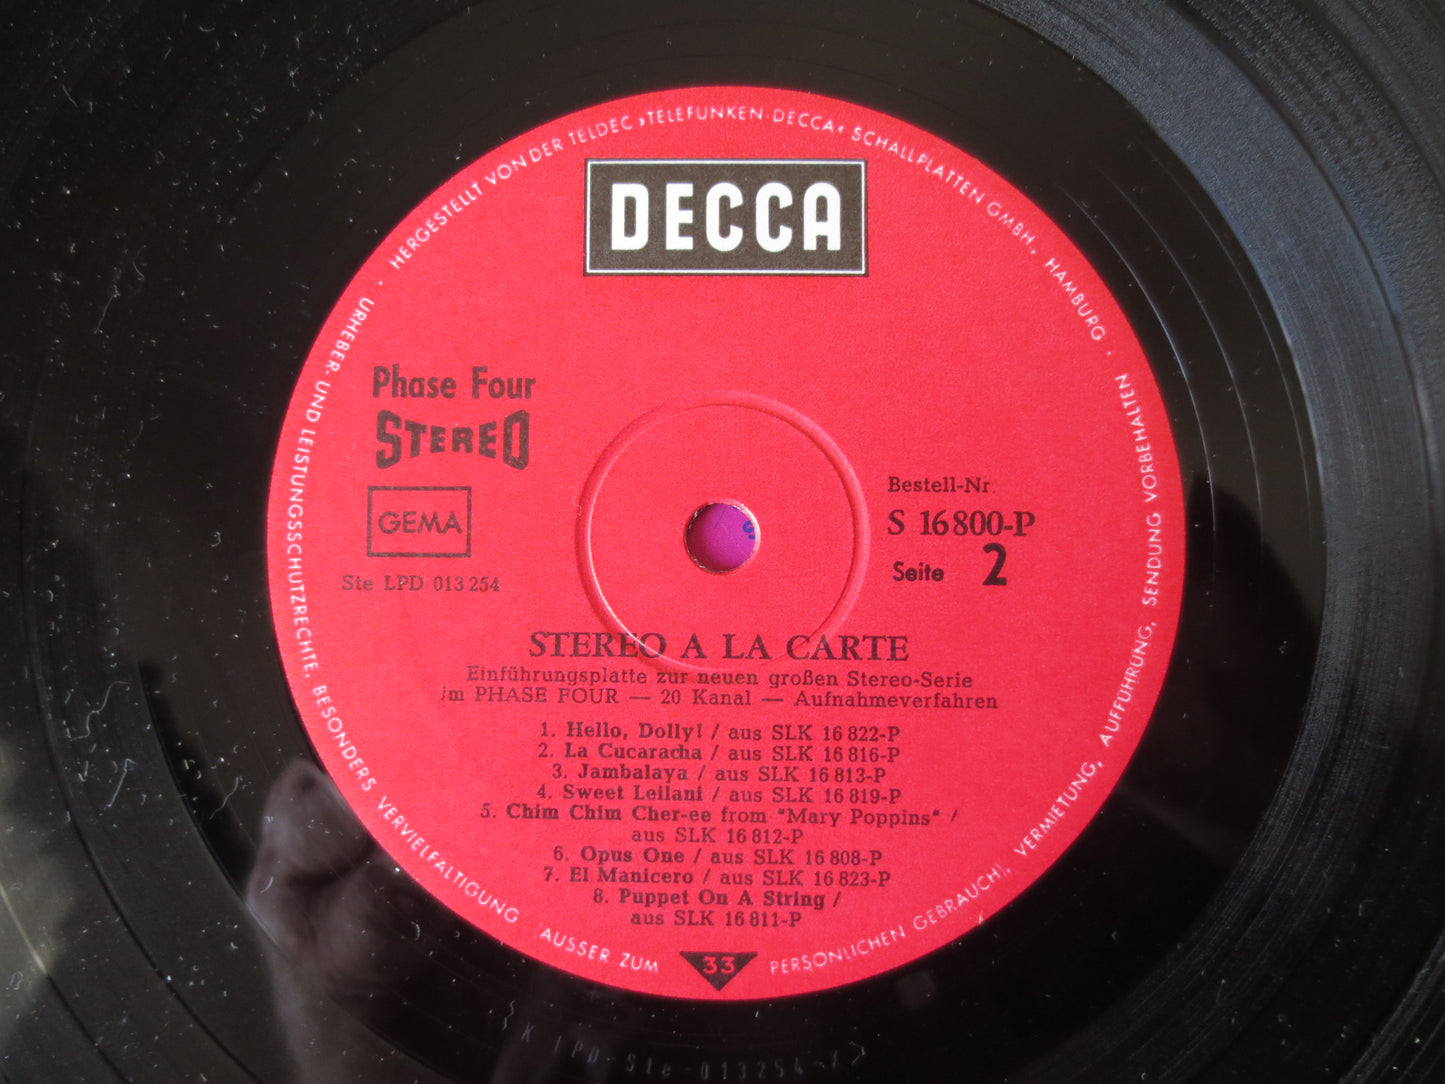 STEREO a'la CARTE, Decca Records, JAZZ Records, Vintage Vinyl, Record Vinyl, Jazz Albums, Vinyl Albums, Lps, 1968 Records